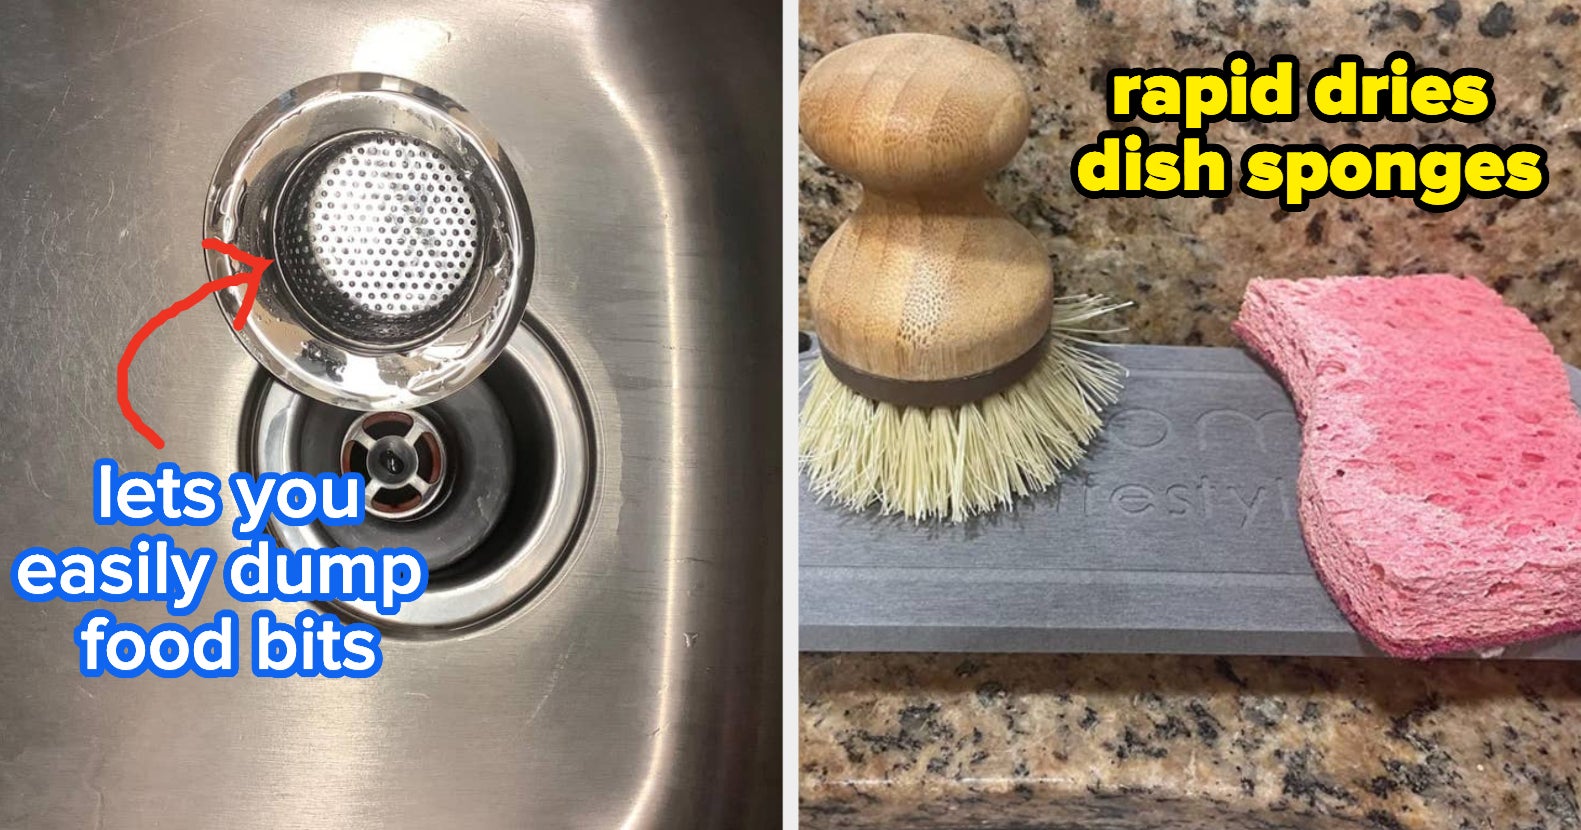 Reusable Kitchen Dishwashing Sponge Don't Hurt Pot Magic Sponge Non-stick  Oil Sponge Dishcloth Bathroom